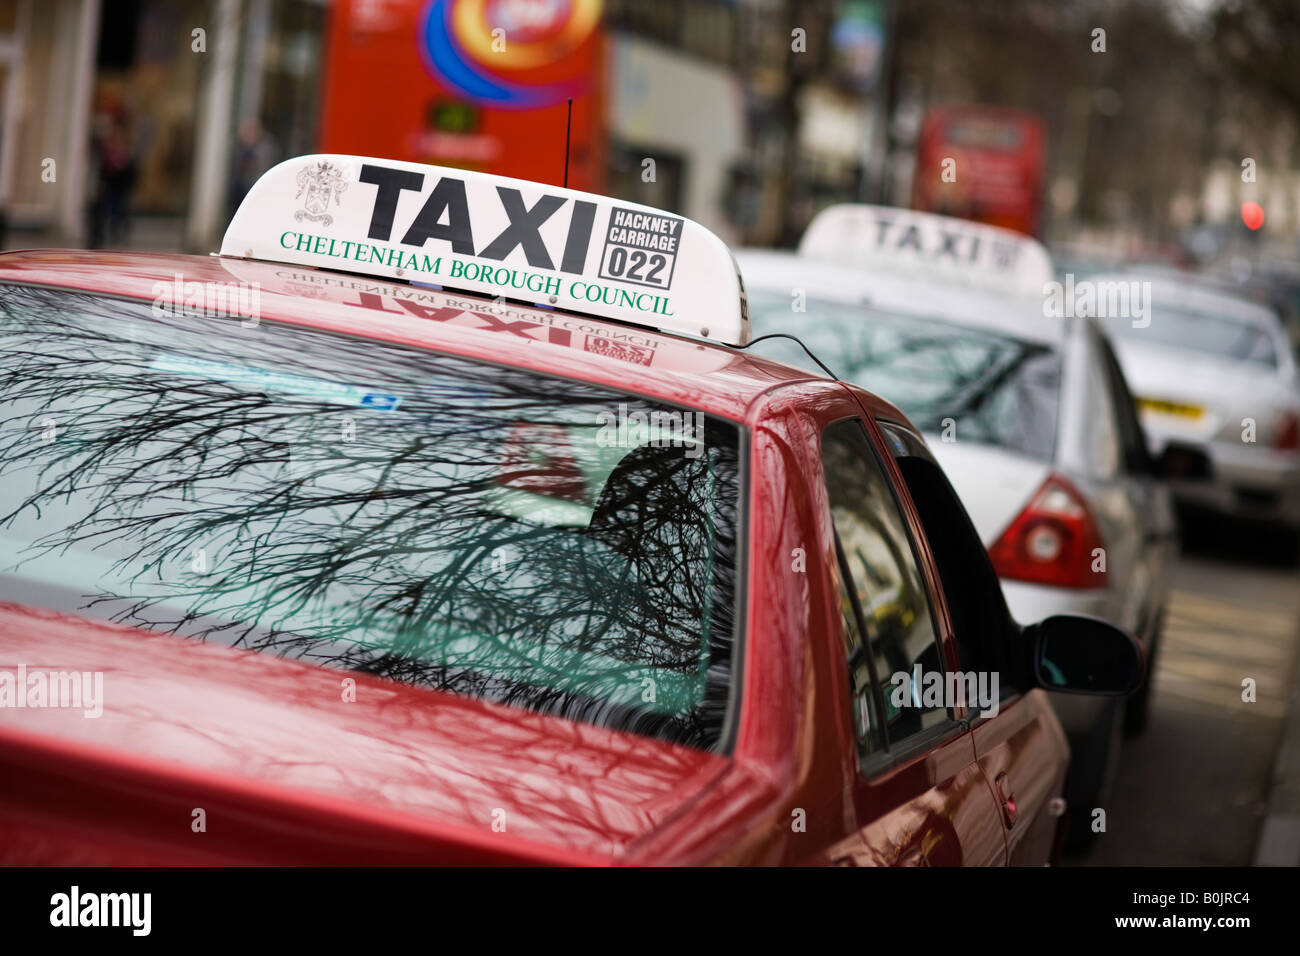 Taxi rank in un centro storico, Cheltenham, Regno Unito Foto Stock